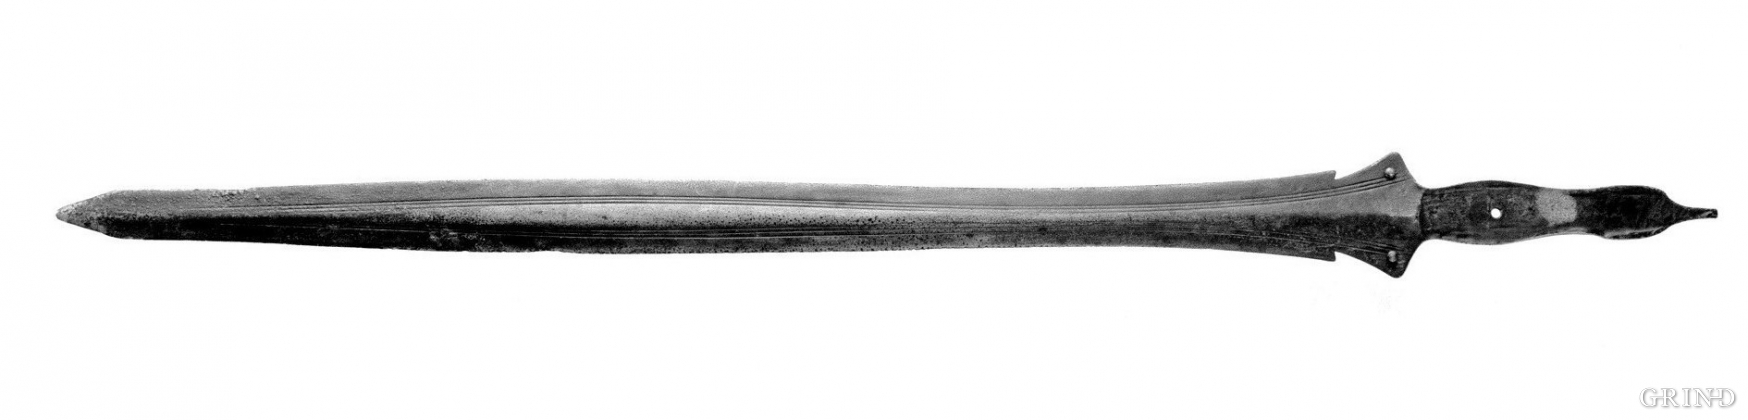 Hallstatt sword